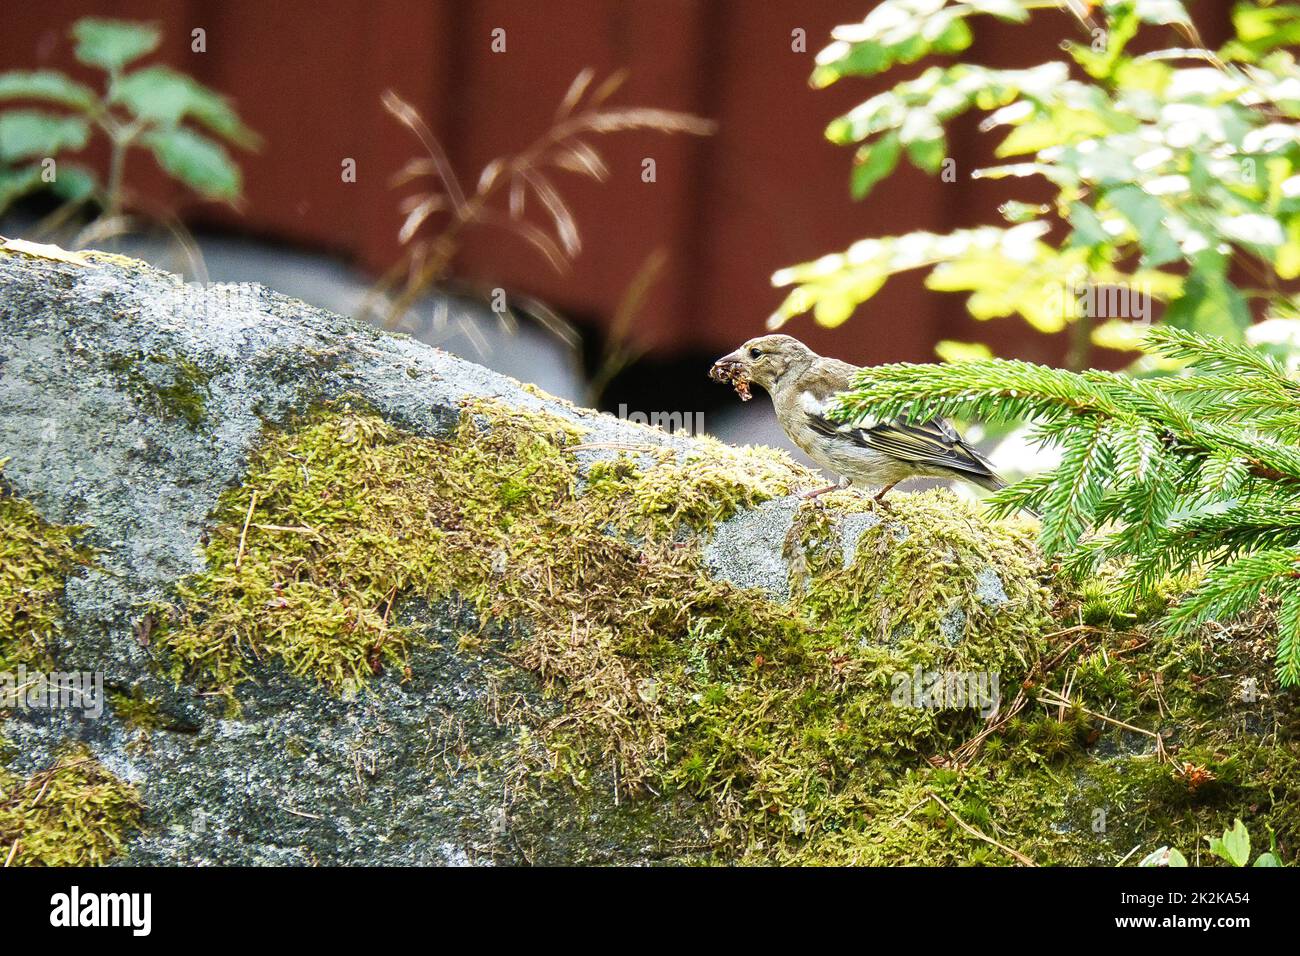 Buchfink juvenile auf einem Stein mit einer Raupe im Schnabel. Braunes, graues, grünes Gefieder. Kleiner singvögel in der Natur. Tierfoto eines kleinen Vogels Stockfoto